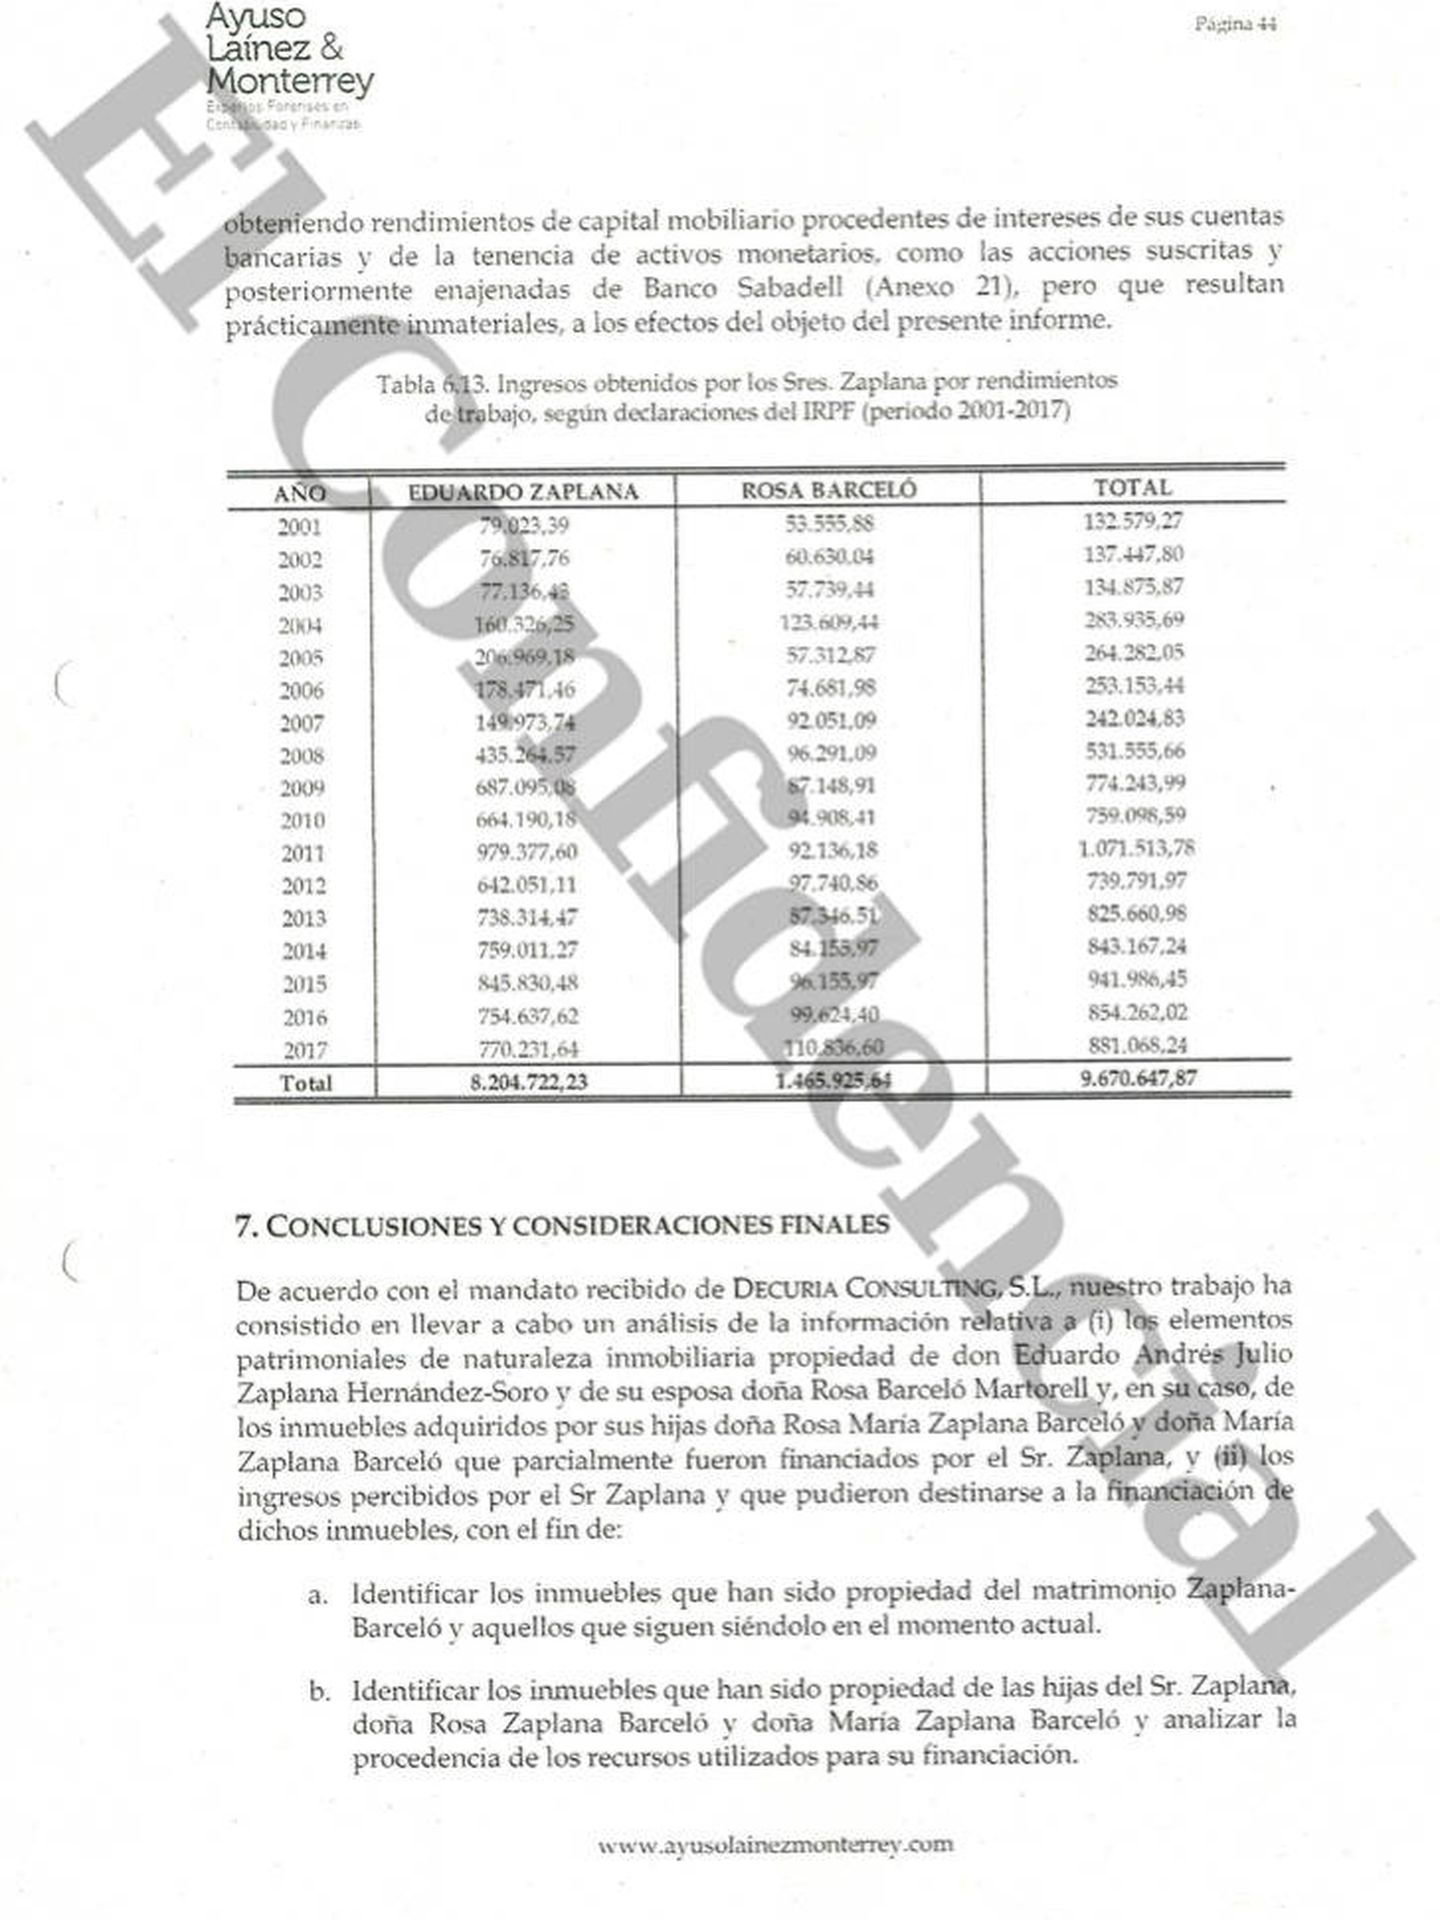 Pinche para ver el informe presentado por la defensa para justificar la compra de propiedades de la familia Zaplana.